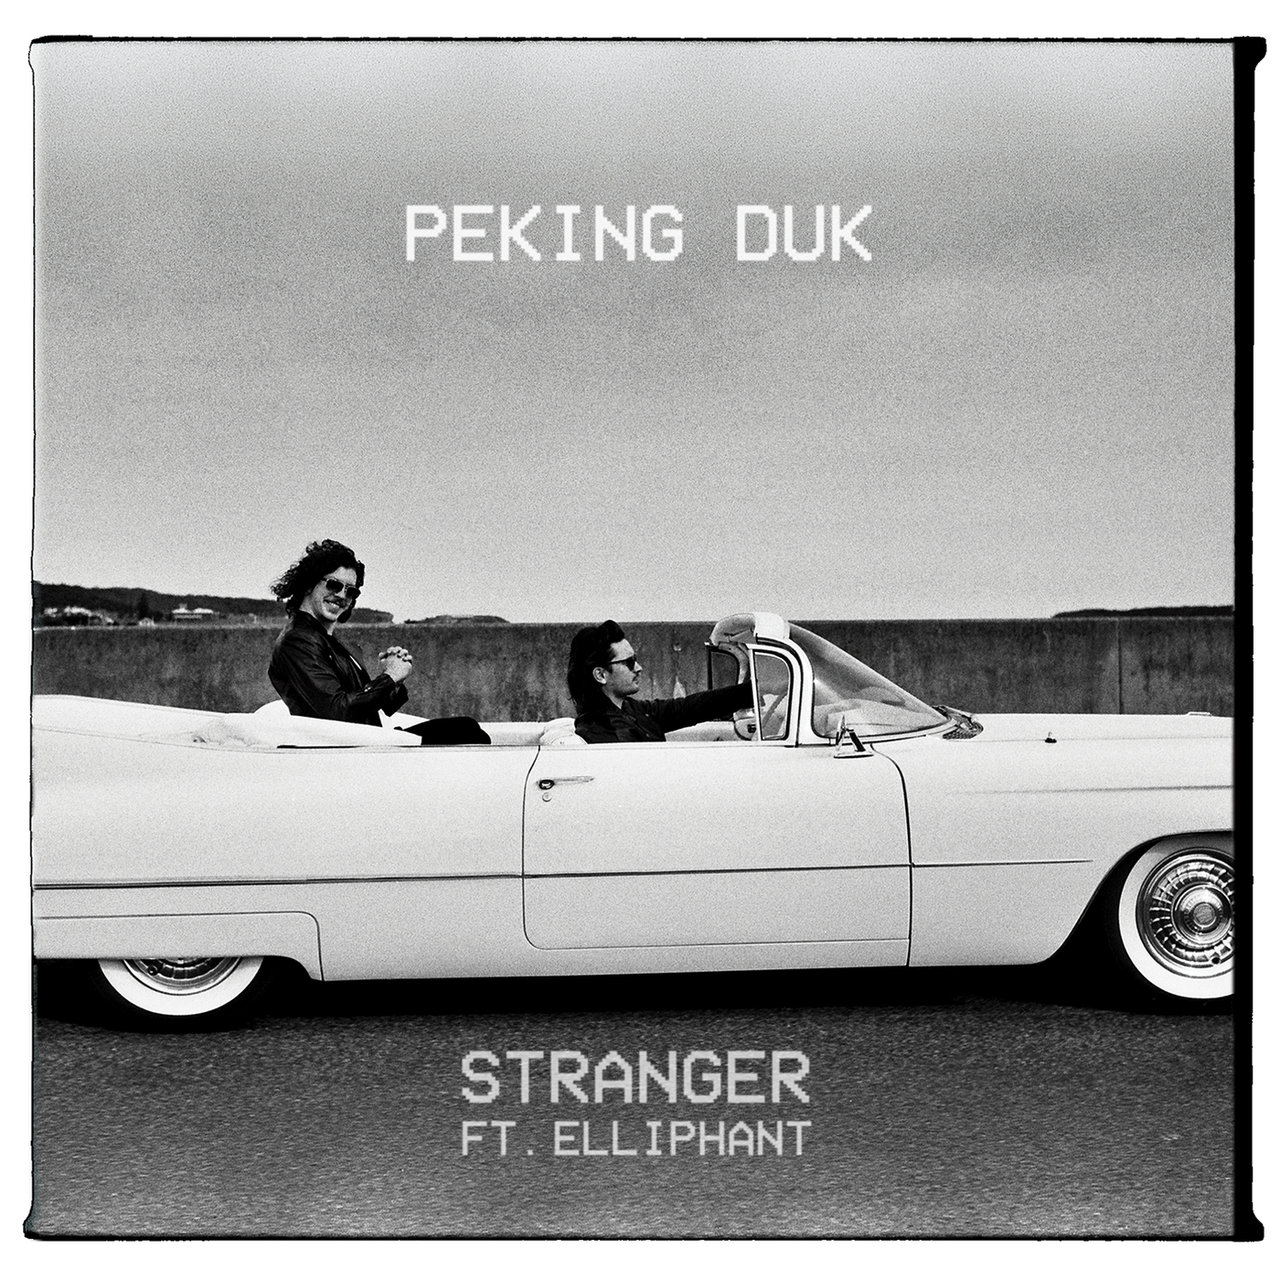 Peking Duk featuring Elliphant — Stranger cover artwork